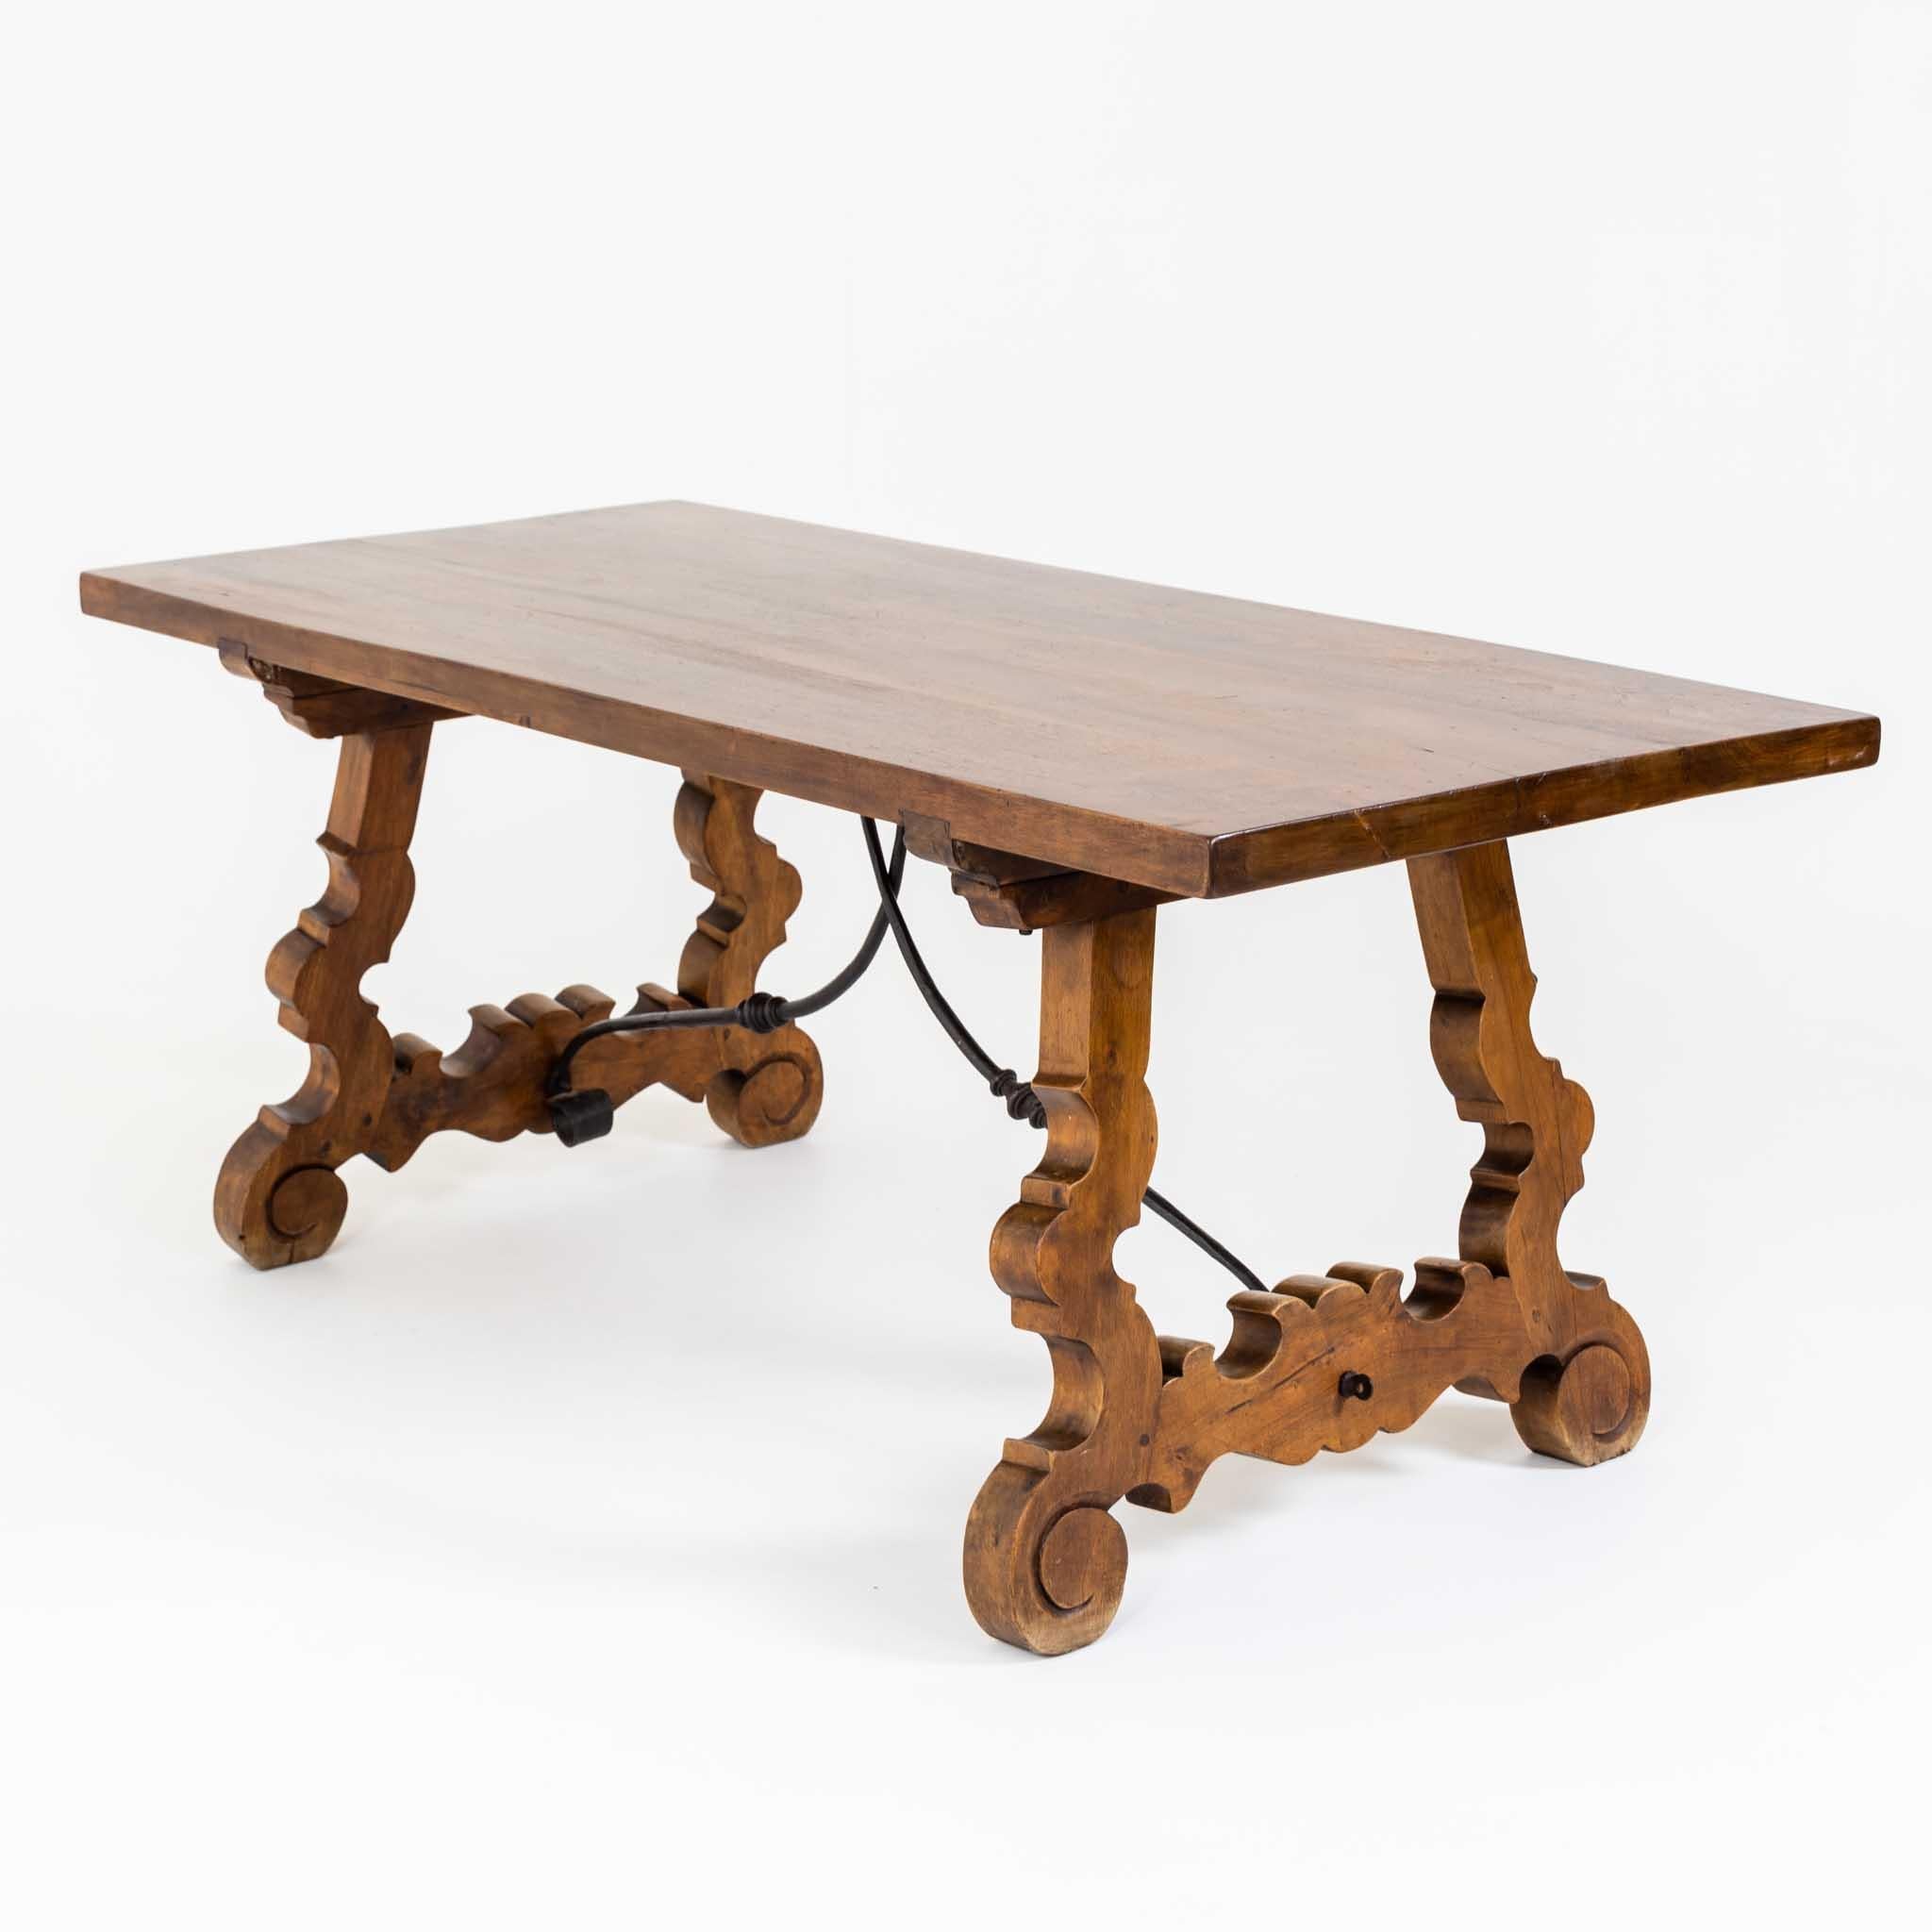 Barocktisch aus massivem Nussbaumholz, mit rechteckiger Tischplatte auf geschwungenen, ausgeschnittenen Beinen und geschwungener Eisenzwischenstrebe.